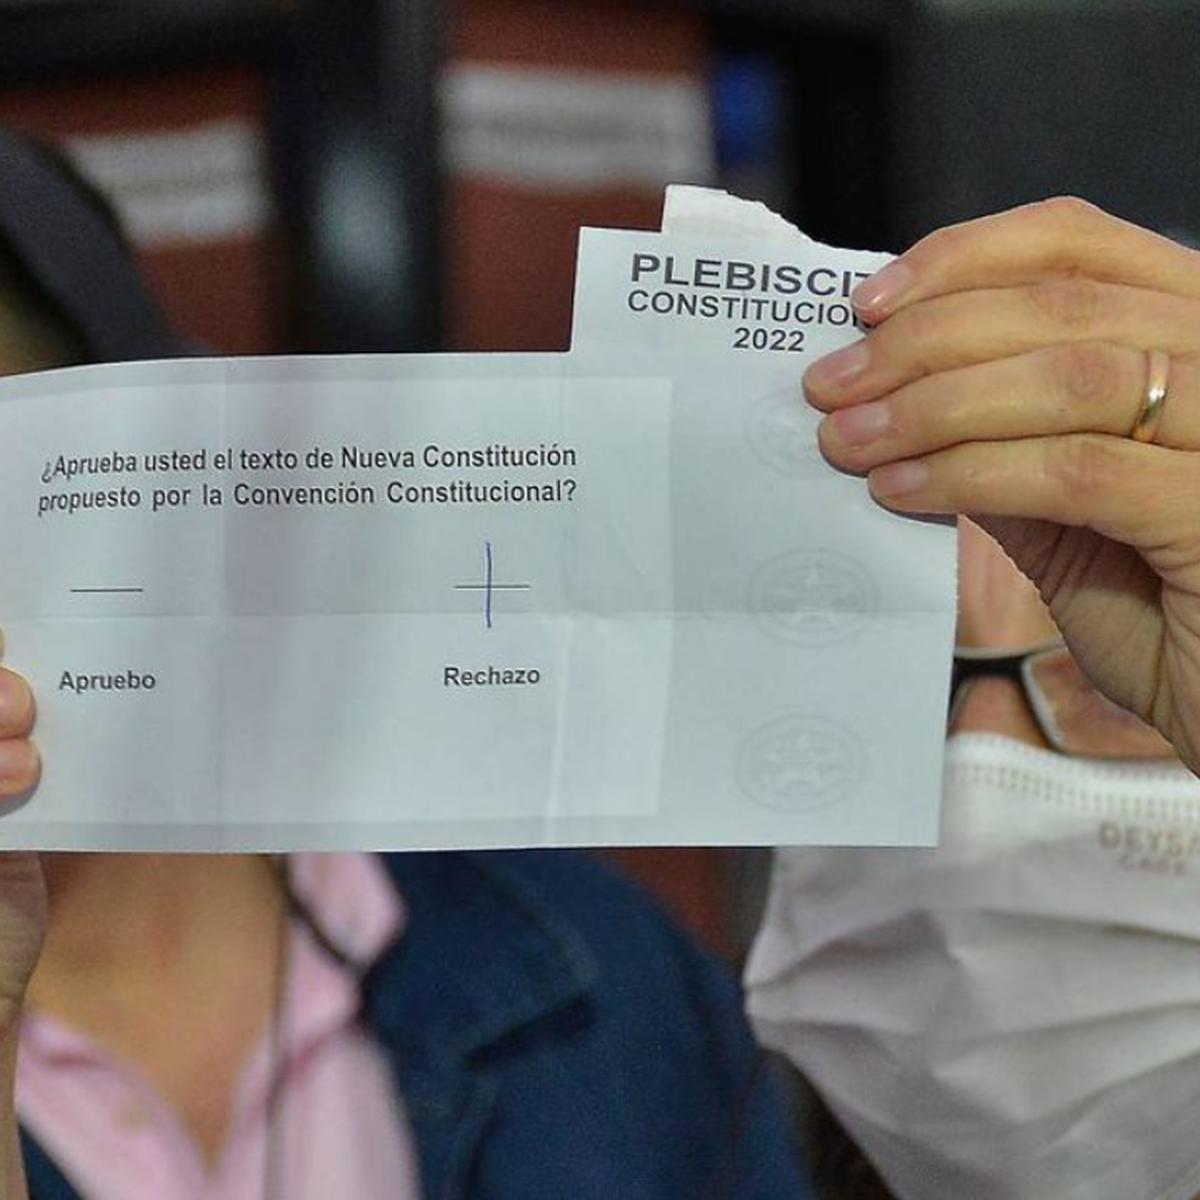 Resultado plebiscito 2022: GANÓ EL RECHAZO., Página 239